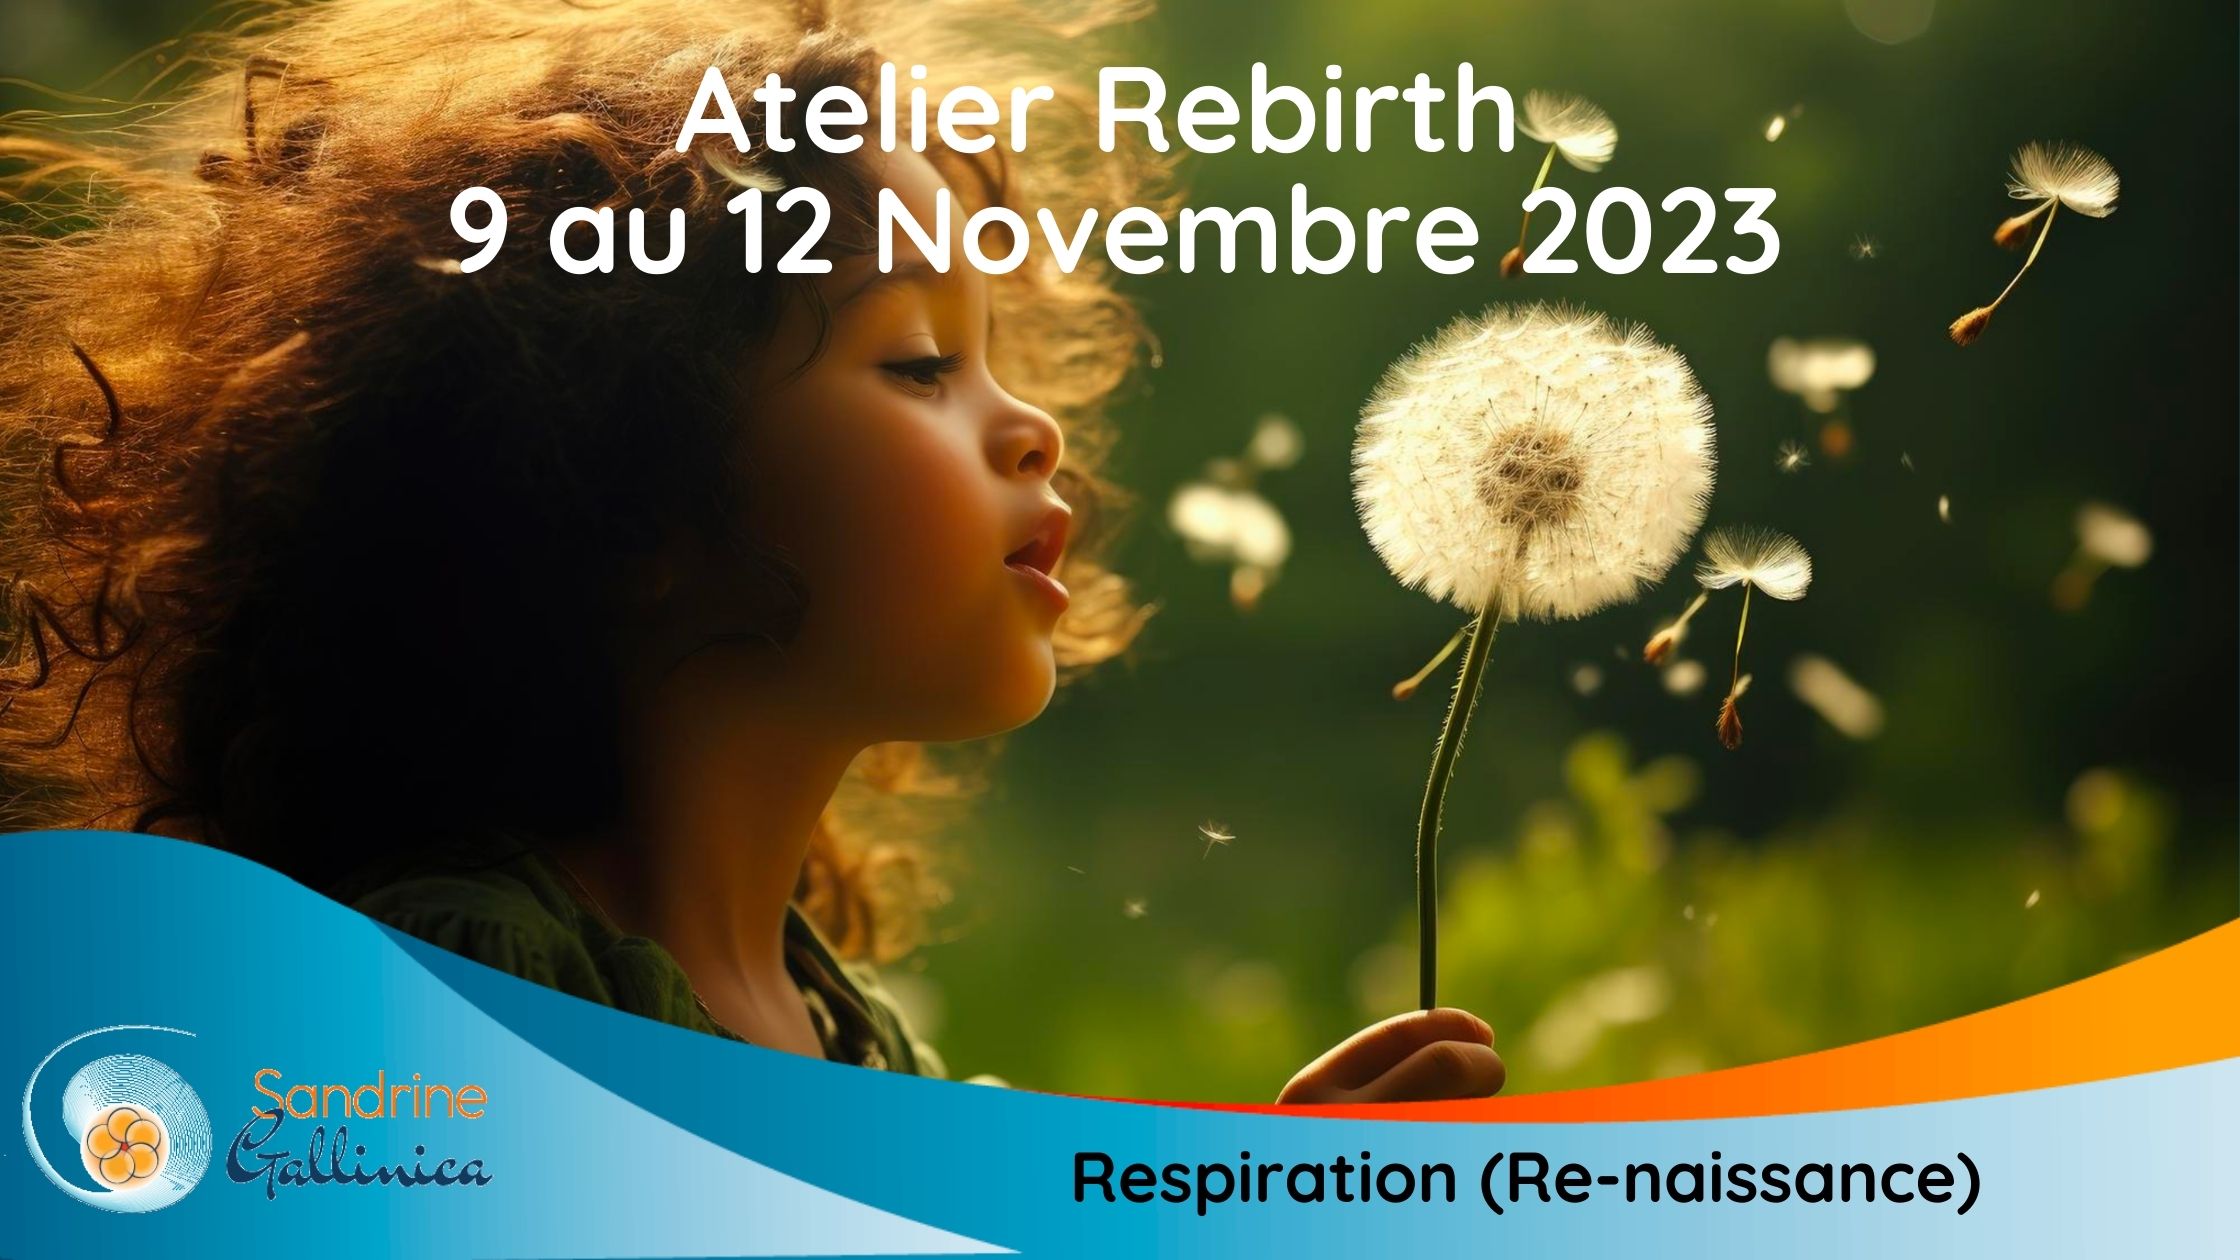 Atelier : Respiration Rebirth (Re-naissance)